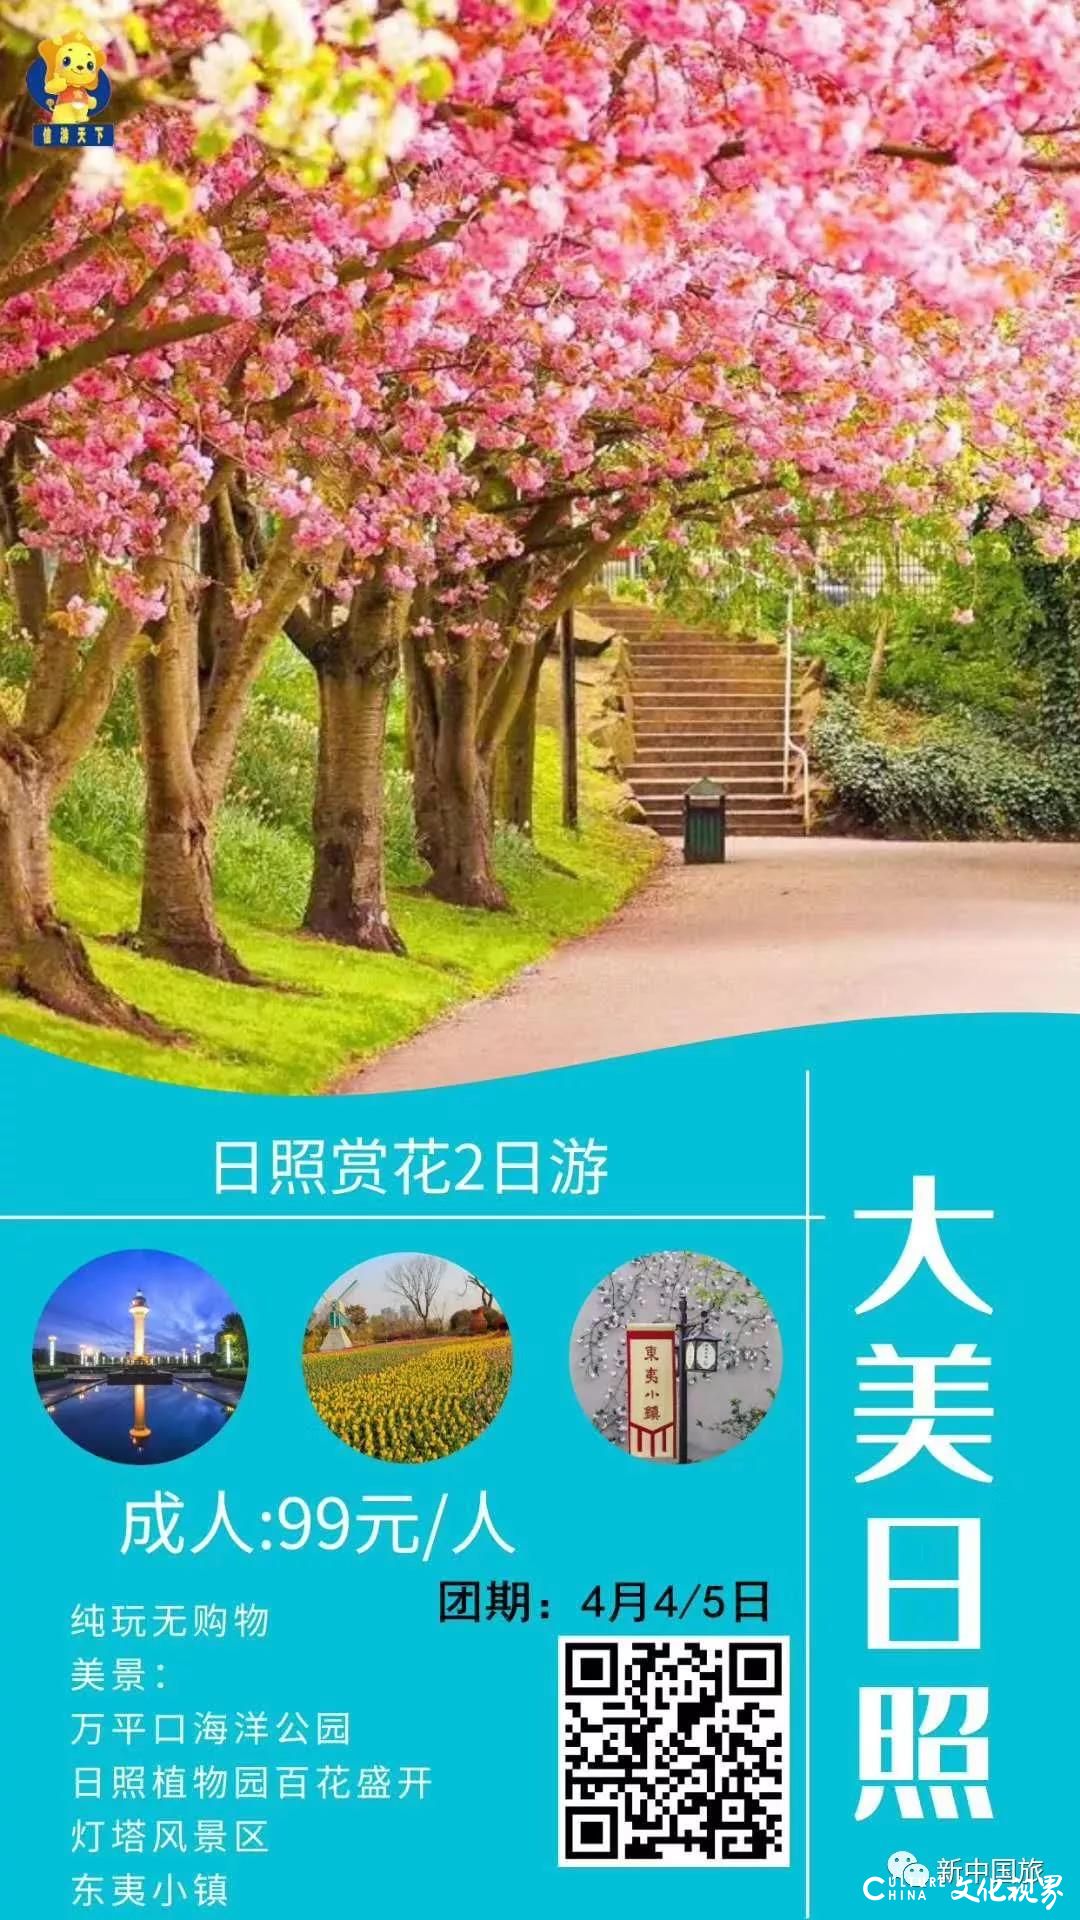 新中国旅邀您——看花海  住民宿  畅享春日美景